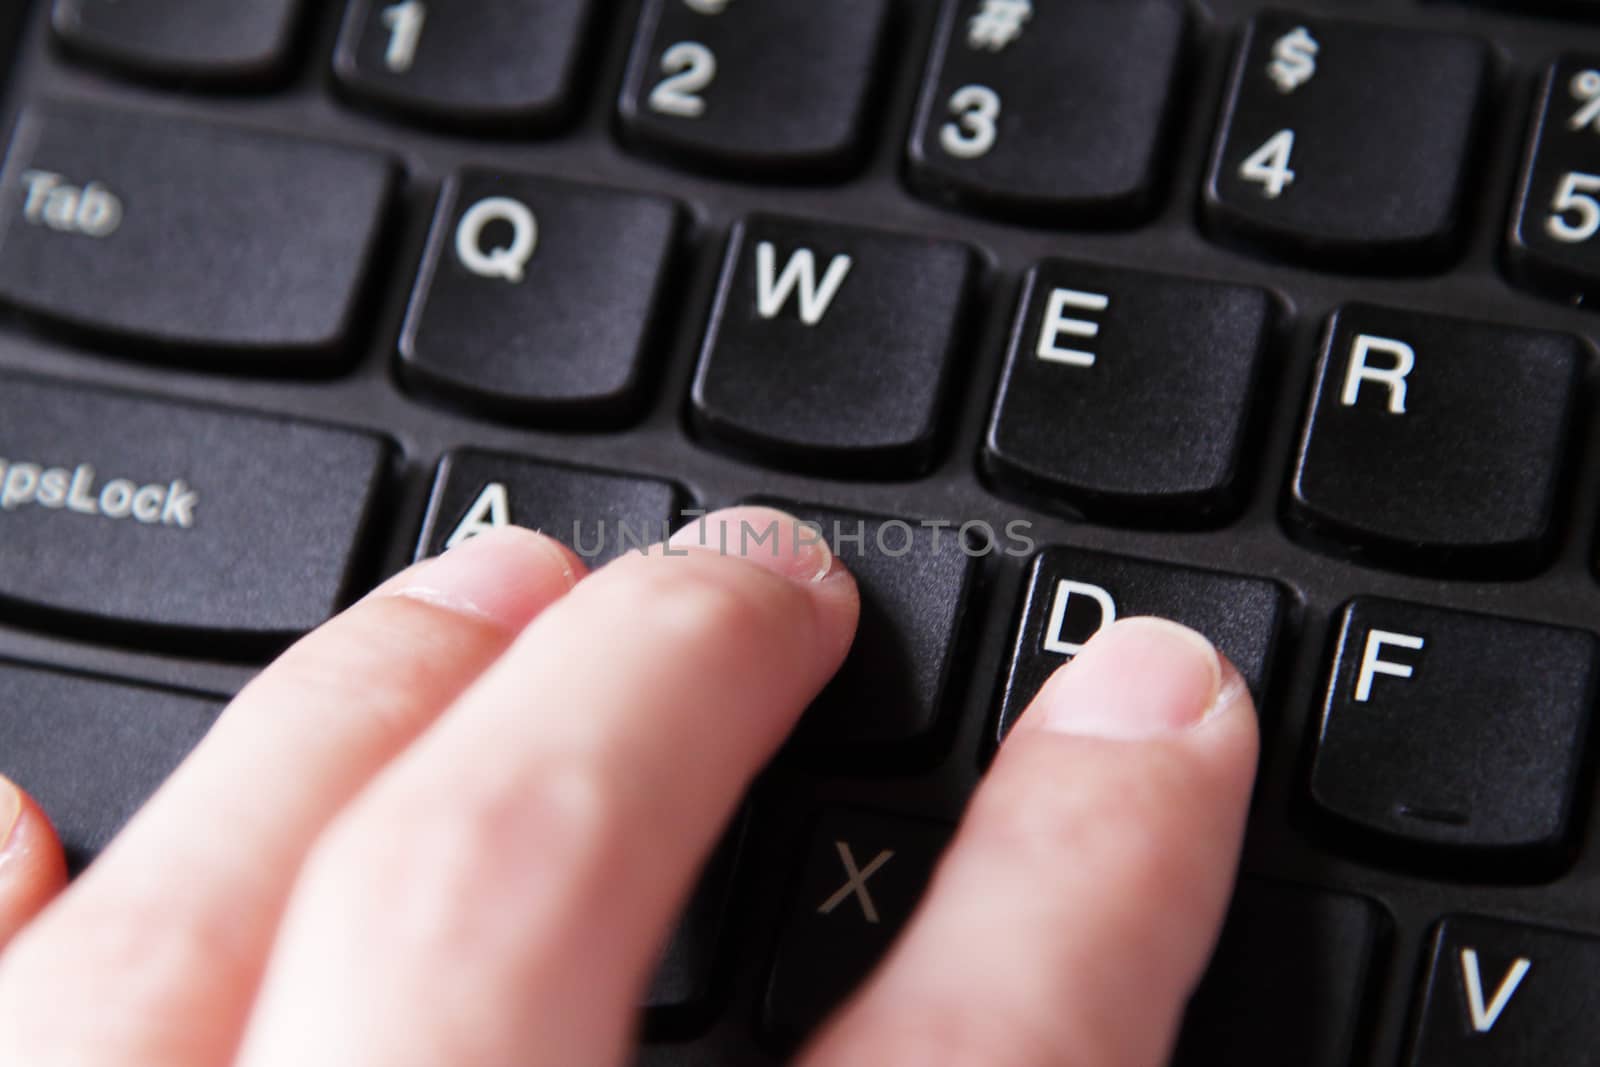 Fingers on keyboard by pulen